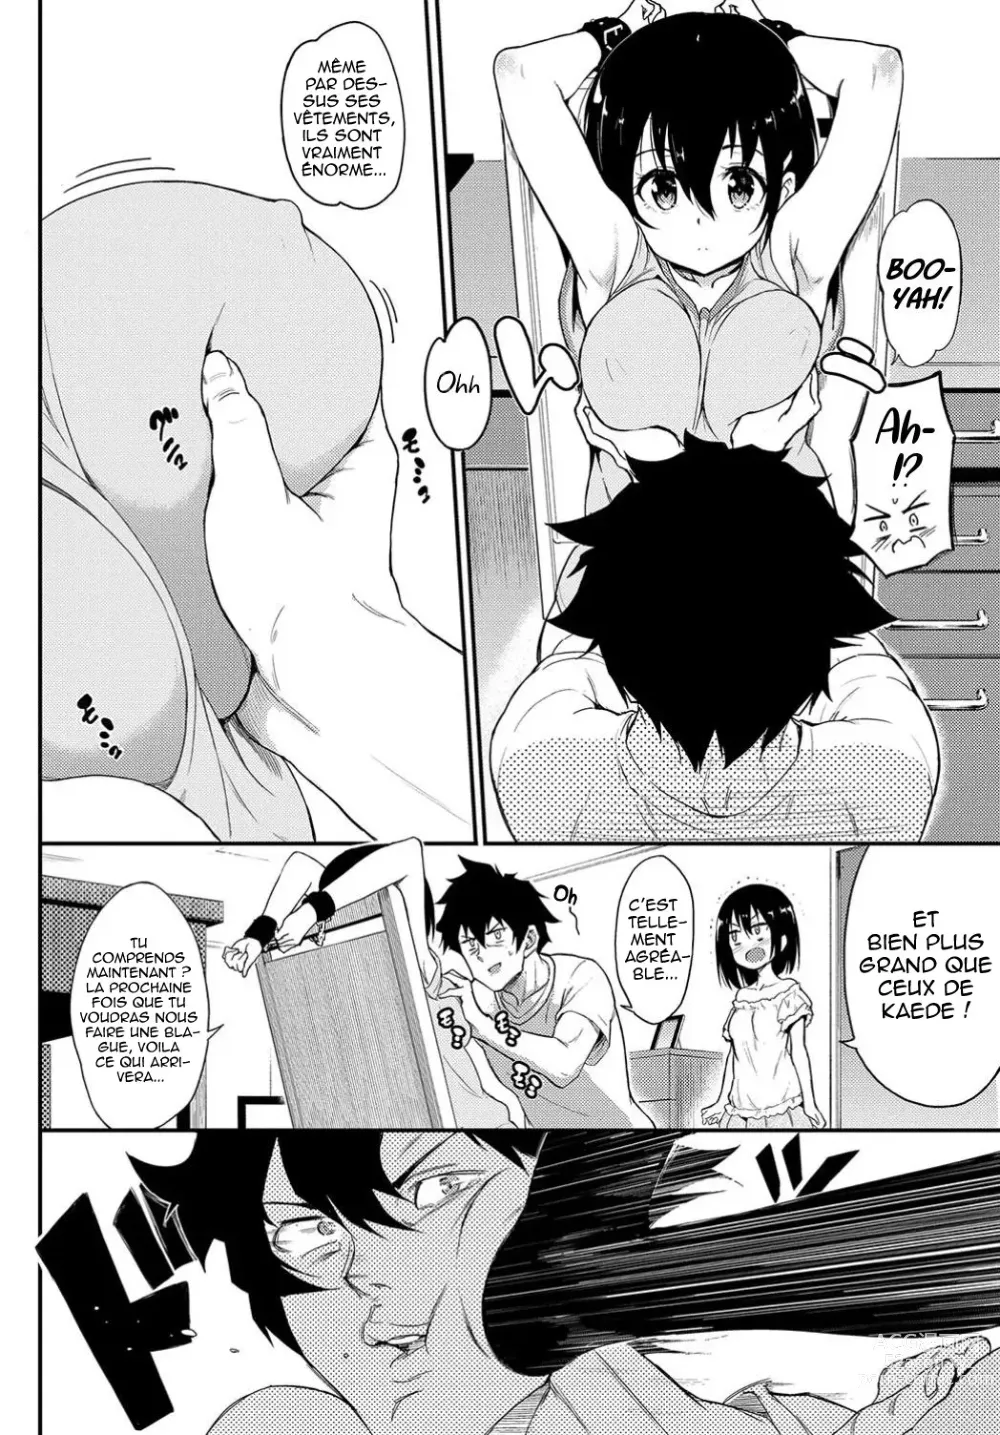 Page 6 of manga Kaede to Suzu 3